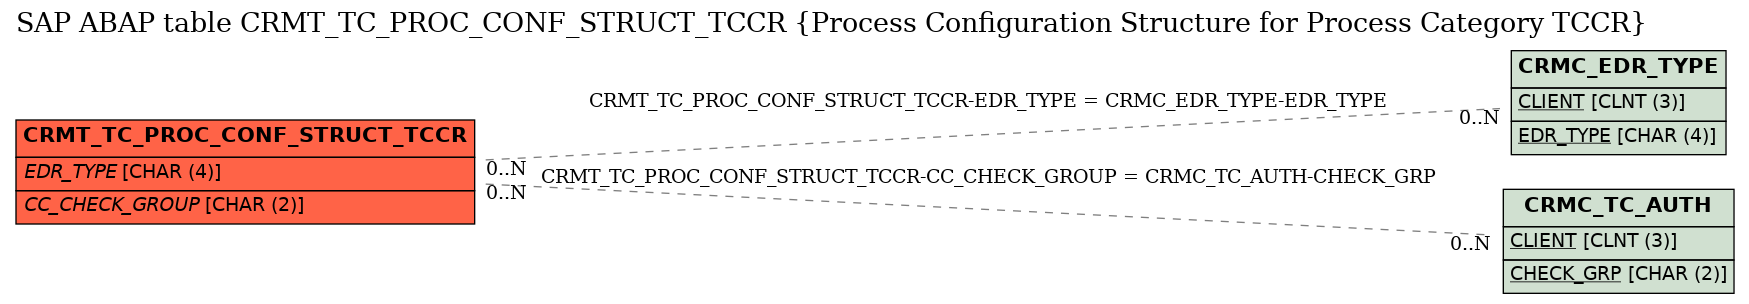 E-R Diagram for table CRMT_TC_PROC_CONF_STRUCT_TCCR (Process Configuration Structure for Process Category TCCR)